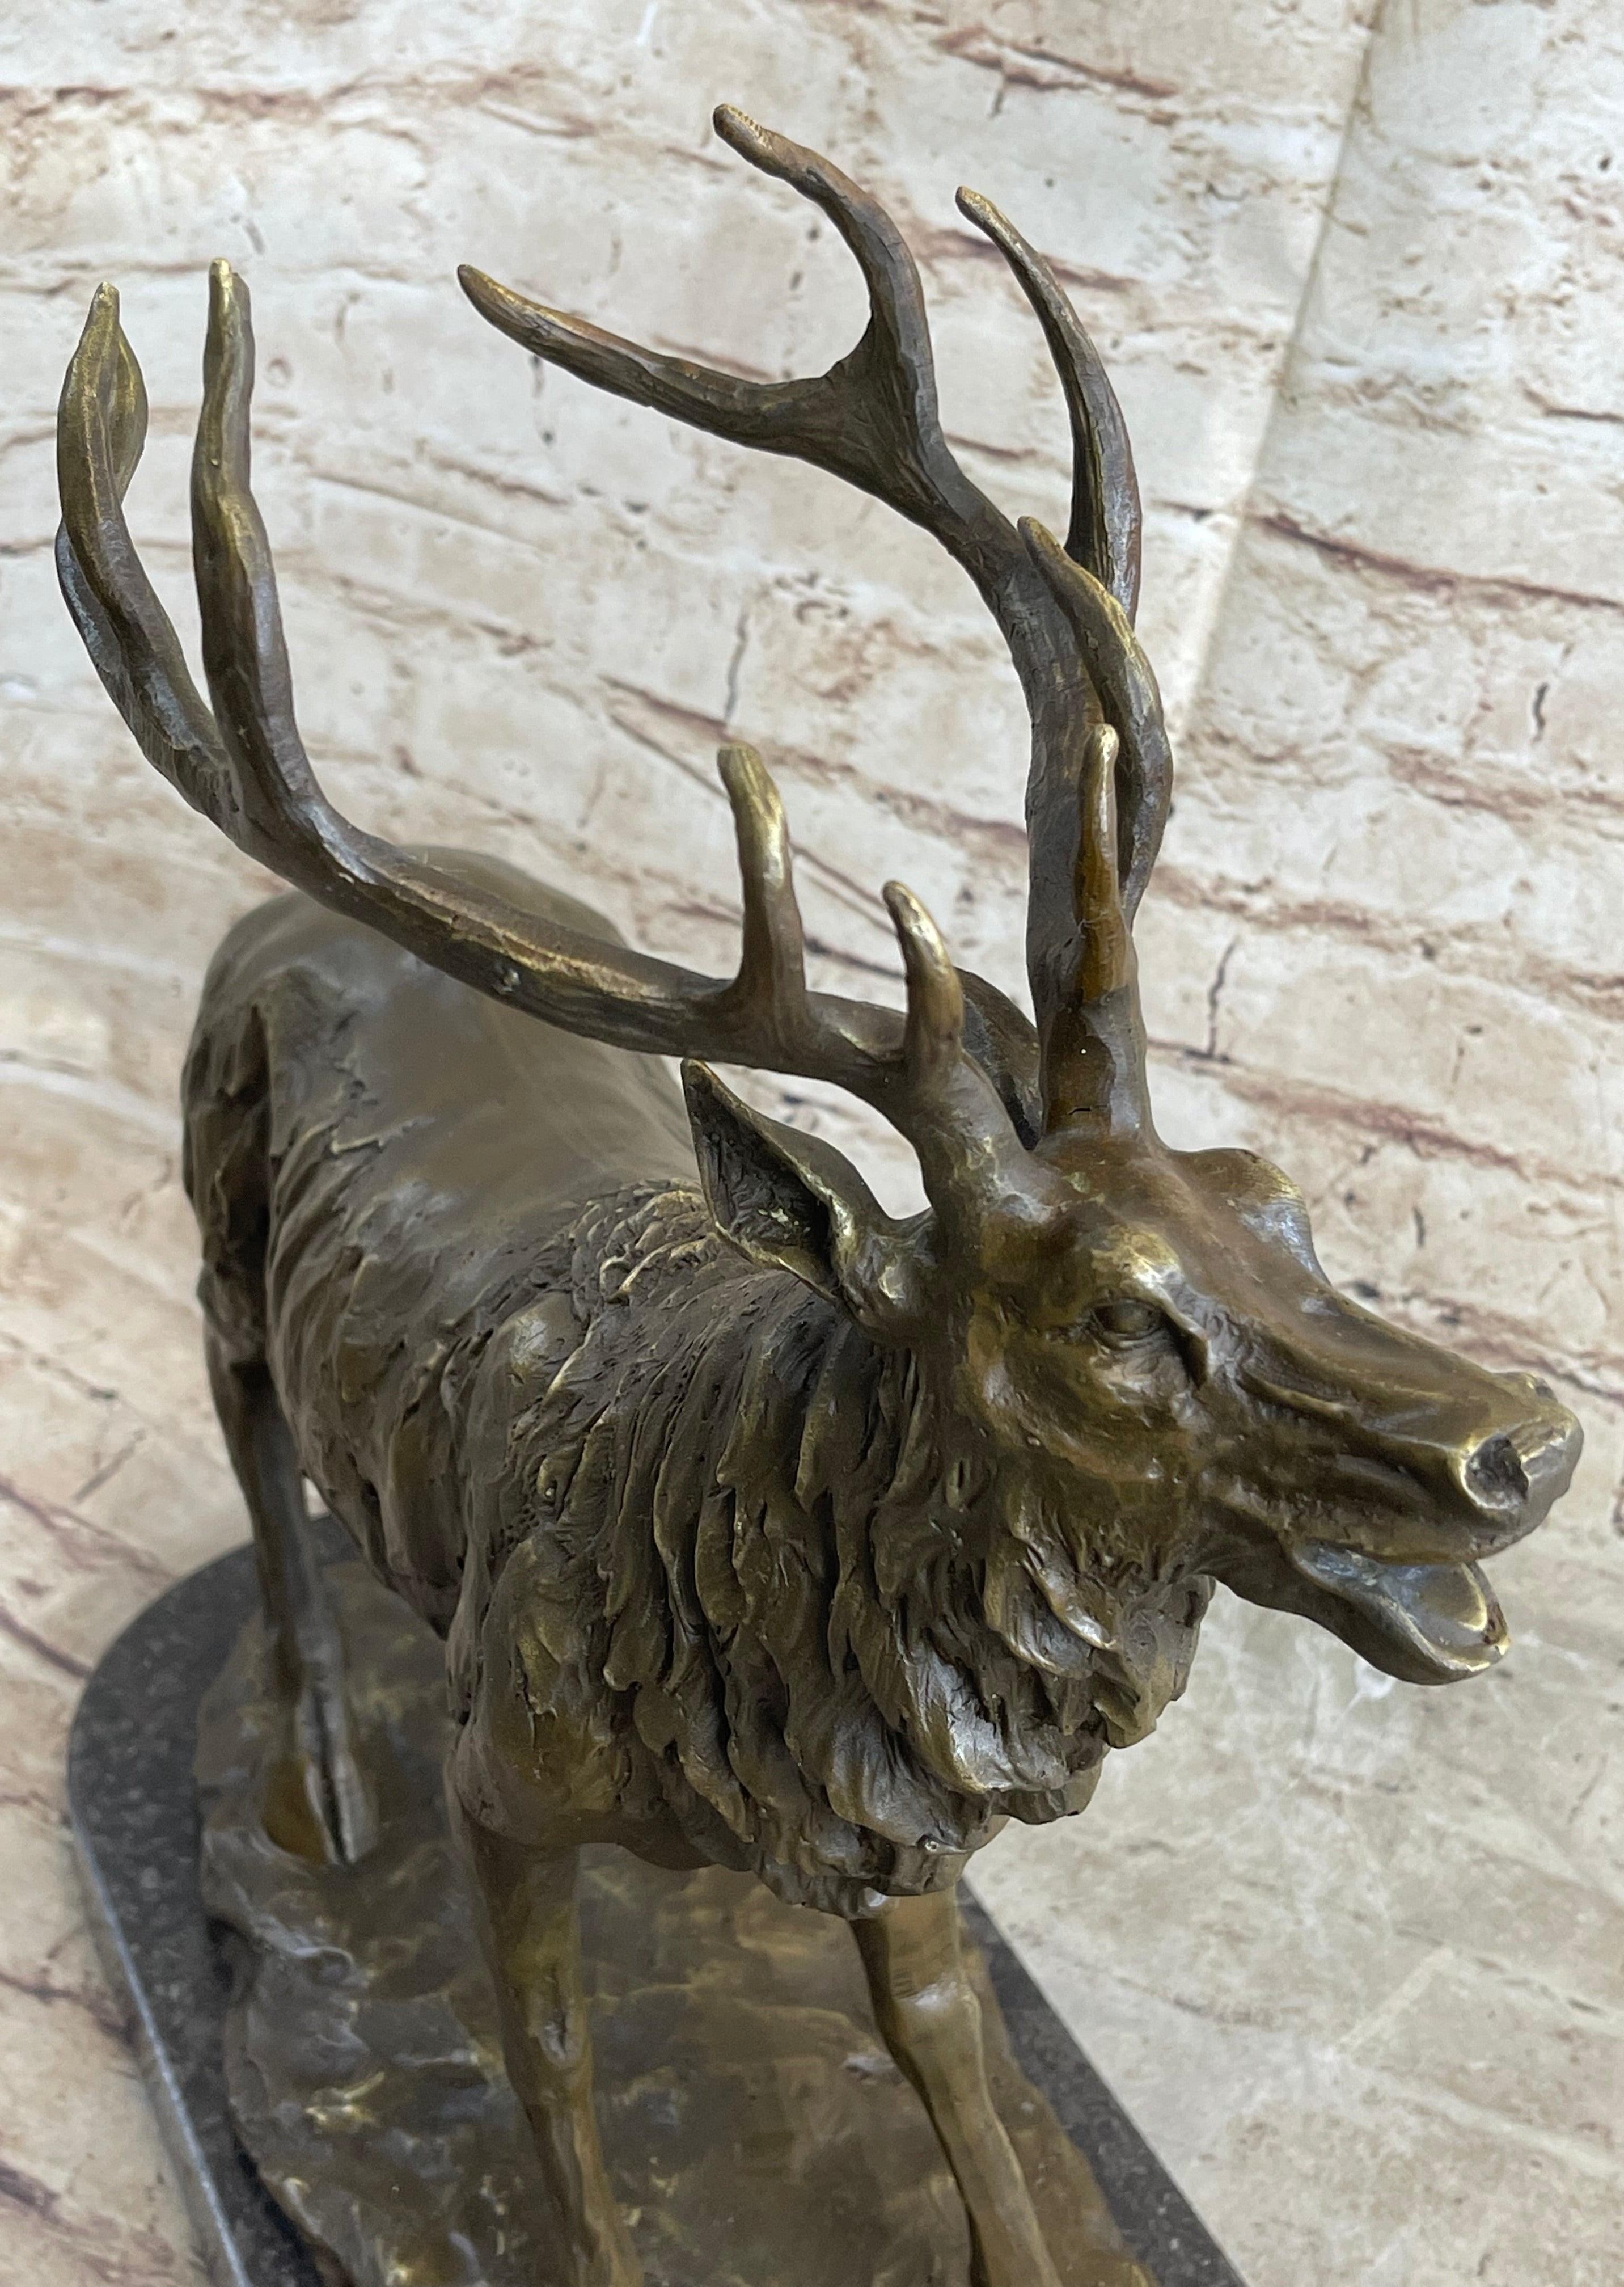 Handcrafted bronze sculpture SALE Art Wildlife Hunter Stag Deer Elk Marble